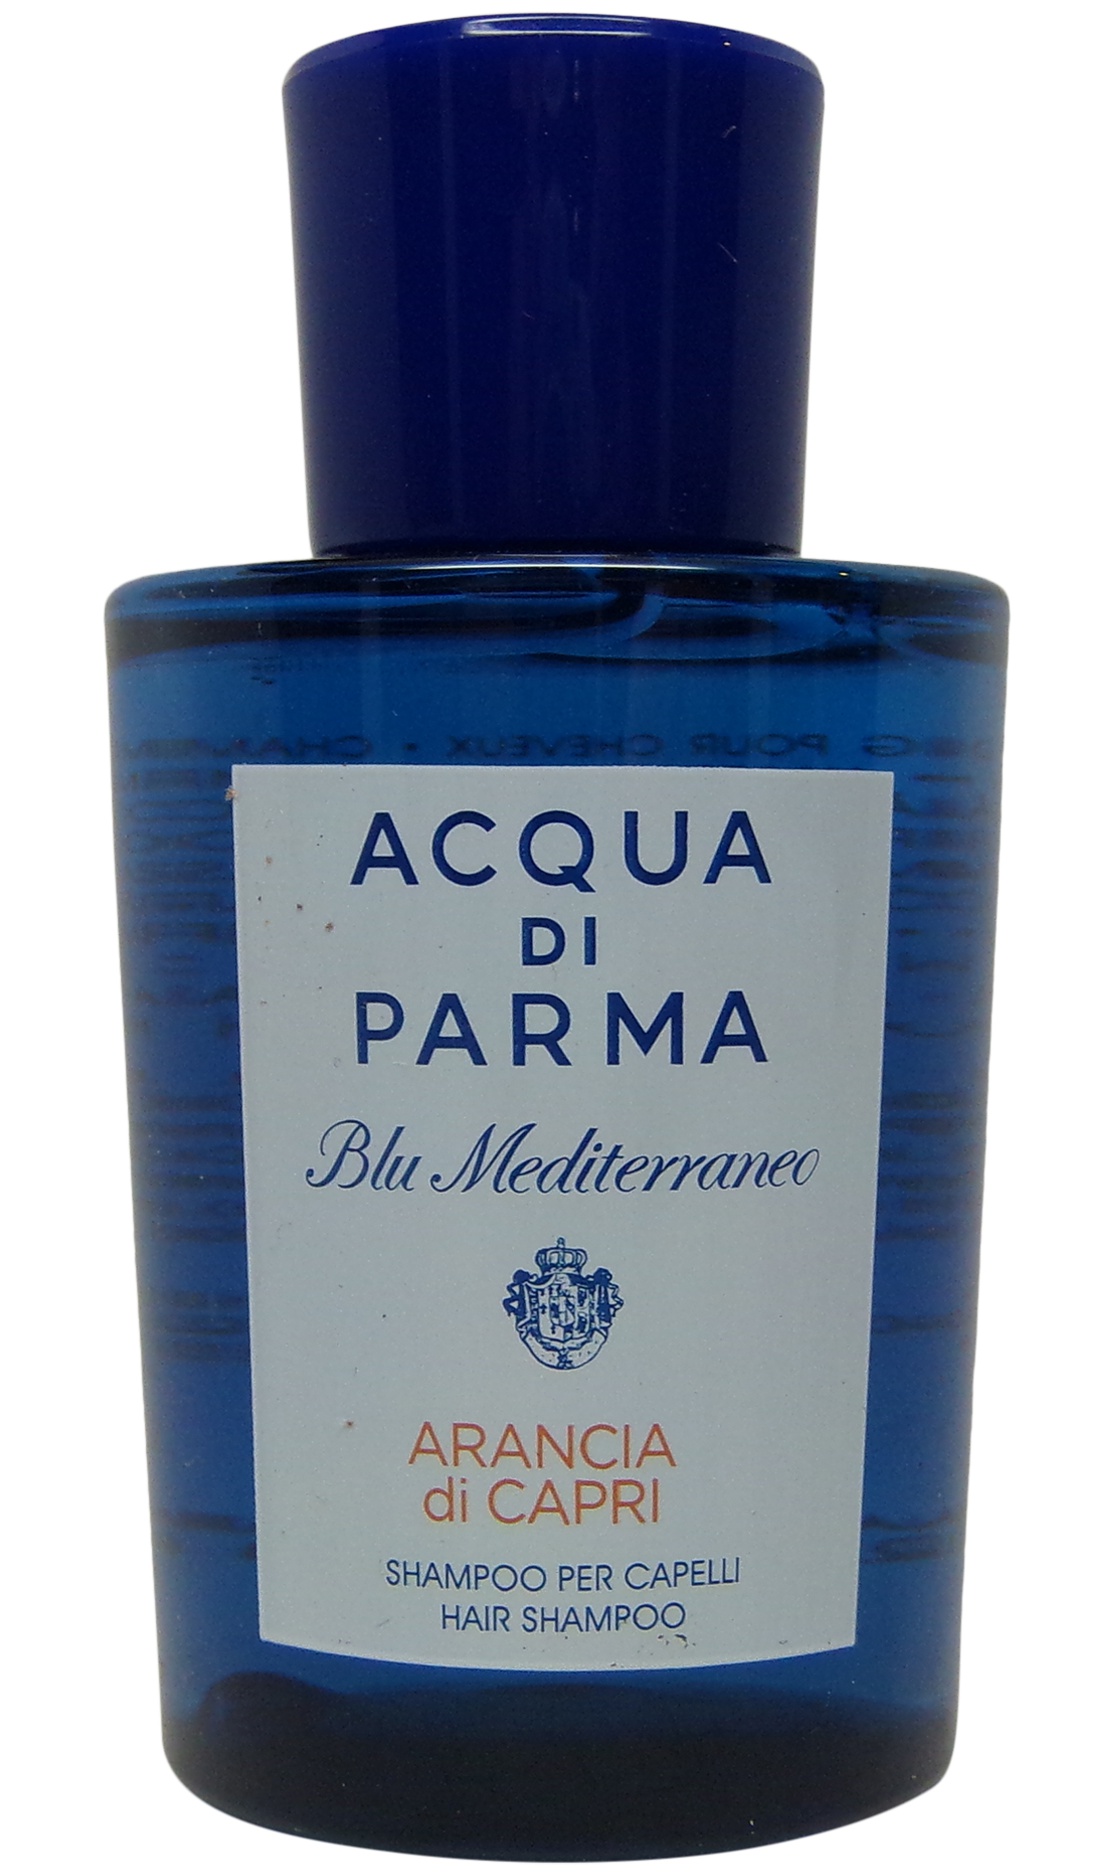 Acqua Di Parma Blu Mediterraneo Arancia Di Capri Hair Shampoo